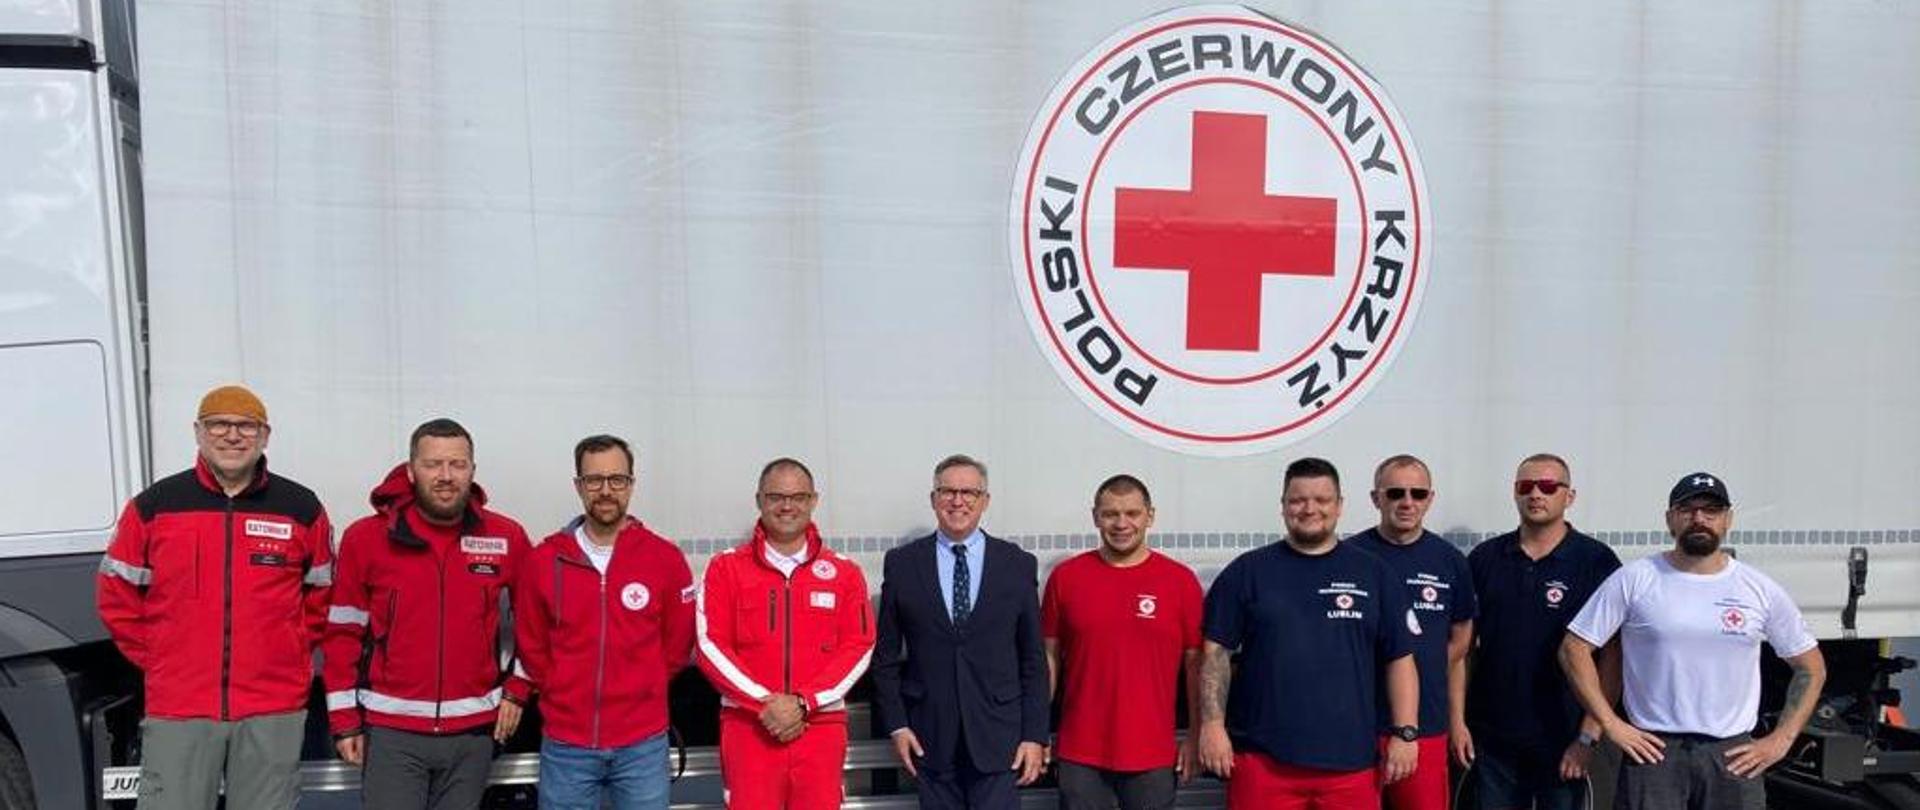 Polski Czerwony Krzyż ruszył na pomoc walczącej z powodziami Słowenii - Ambasador Krzysztof Olendzki z Zespołem PCK w centrum Słoweńskiego Czerwonego Krzyża w Celje